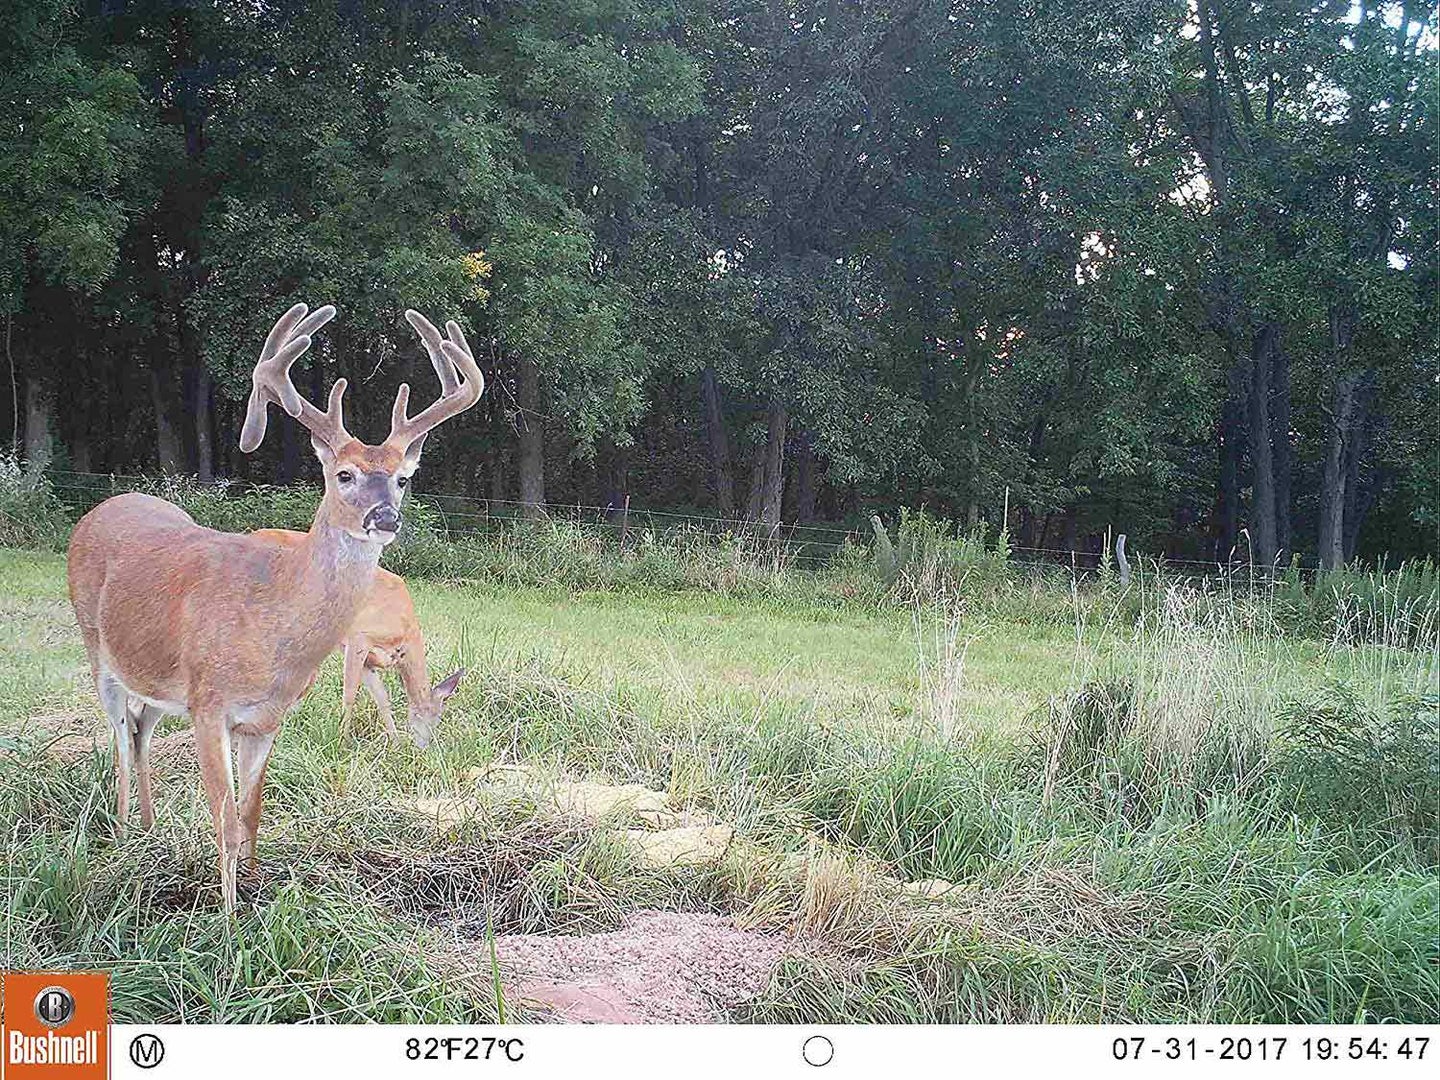 Bushnell deer camera shot image view